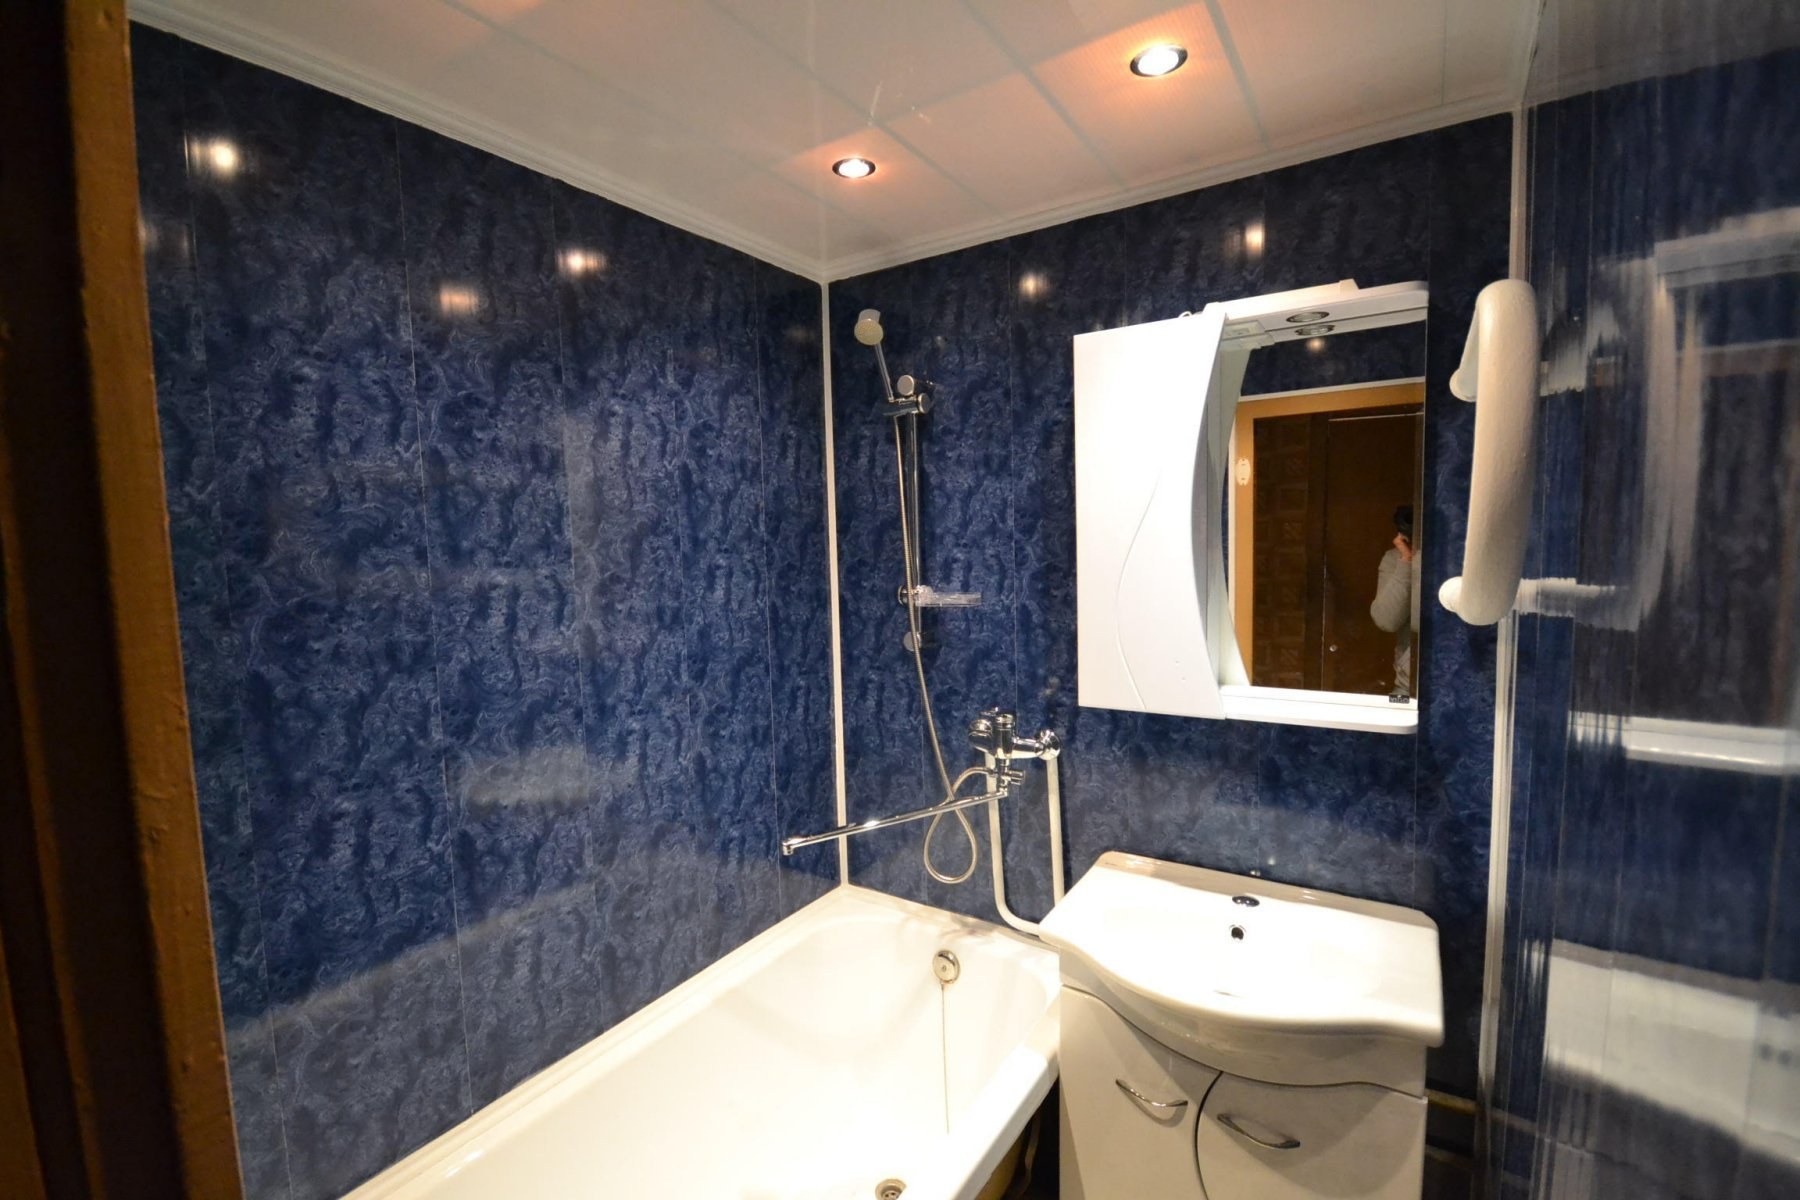 Ванная комната отделка стен панелями. Отделка ванной комнаты панелями ПВХ. Ванная комната отделанная панелями. Ванная комната из пластиковых панелей. Ванная комната отделанная пластиковыми панелями.